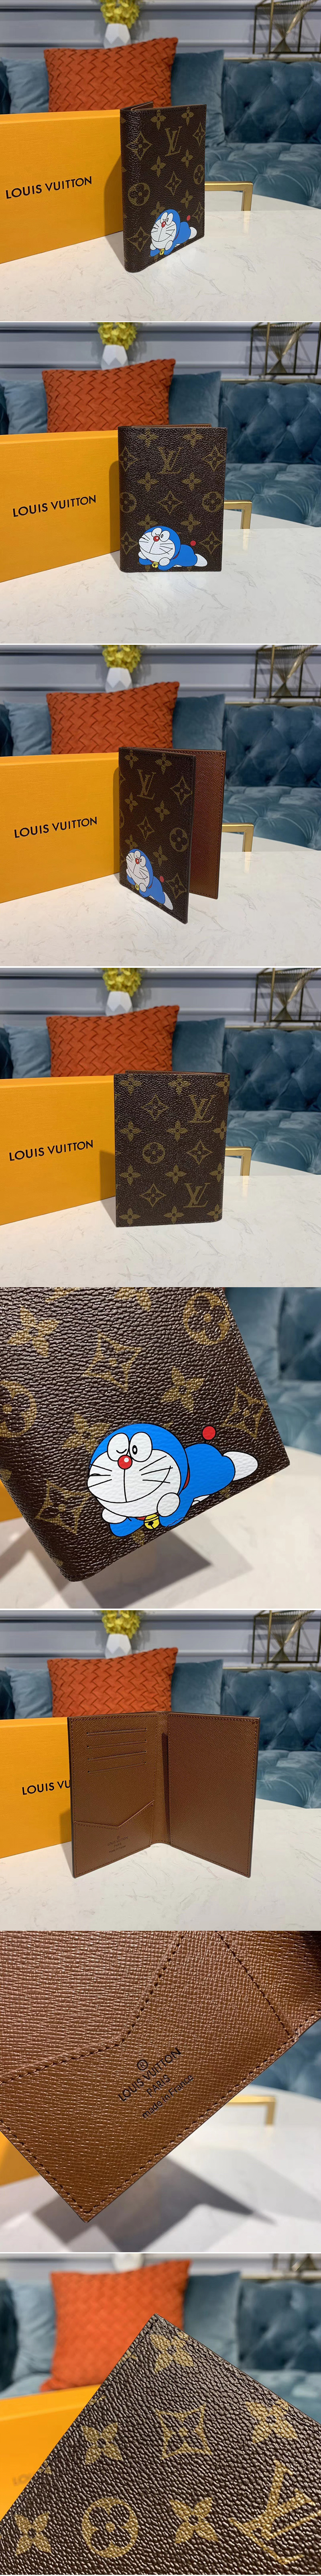 Louis Vuitton Repair Service